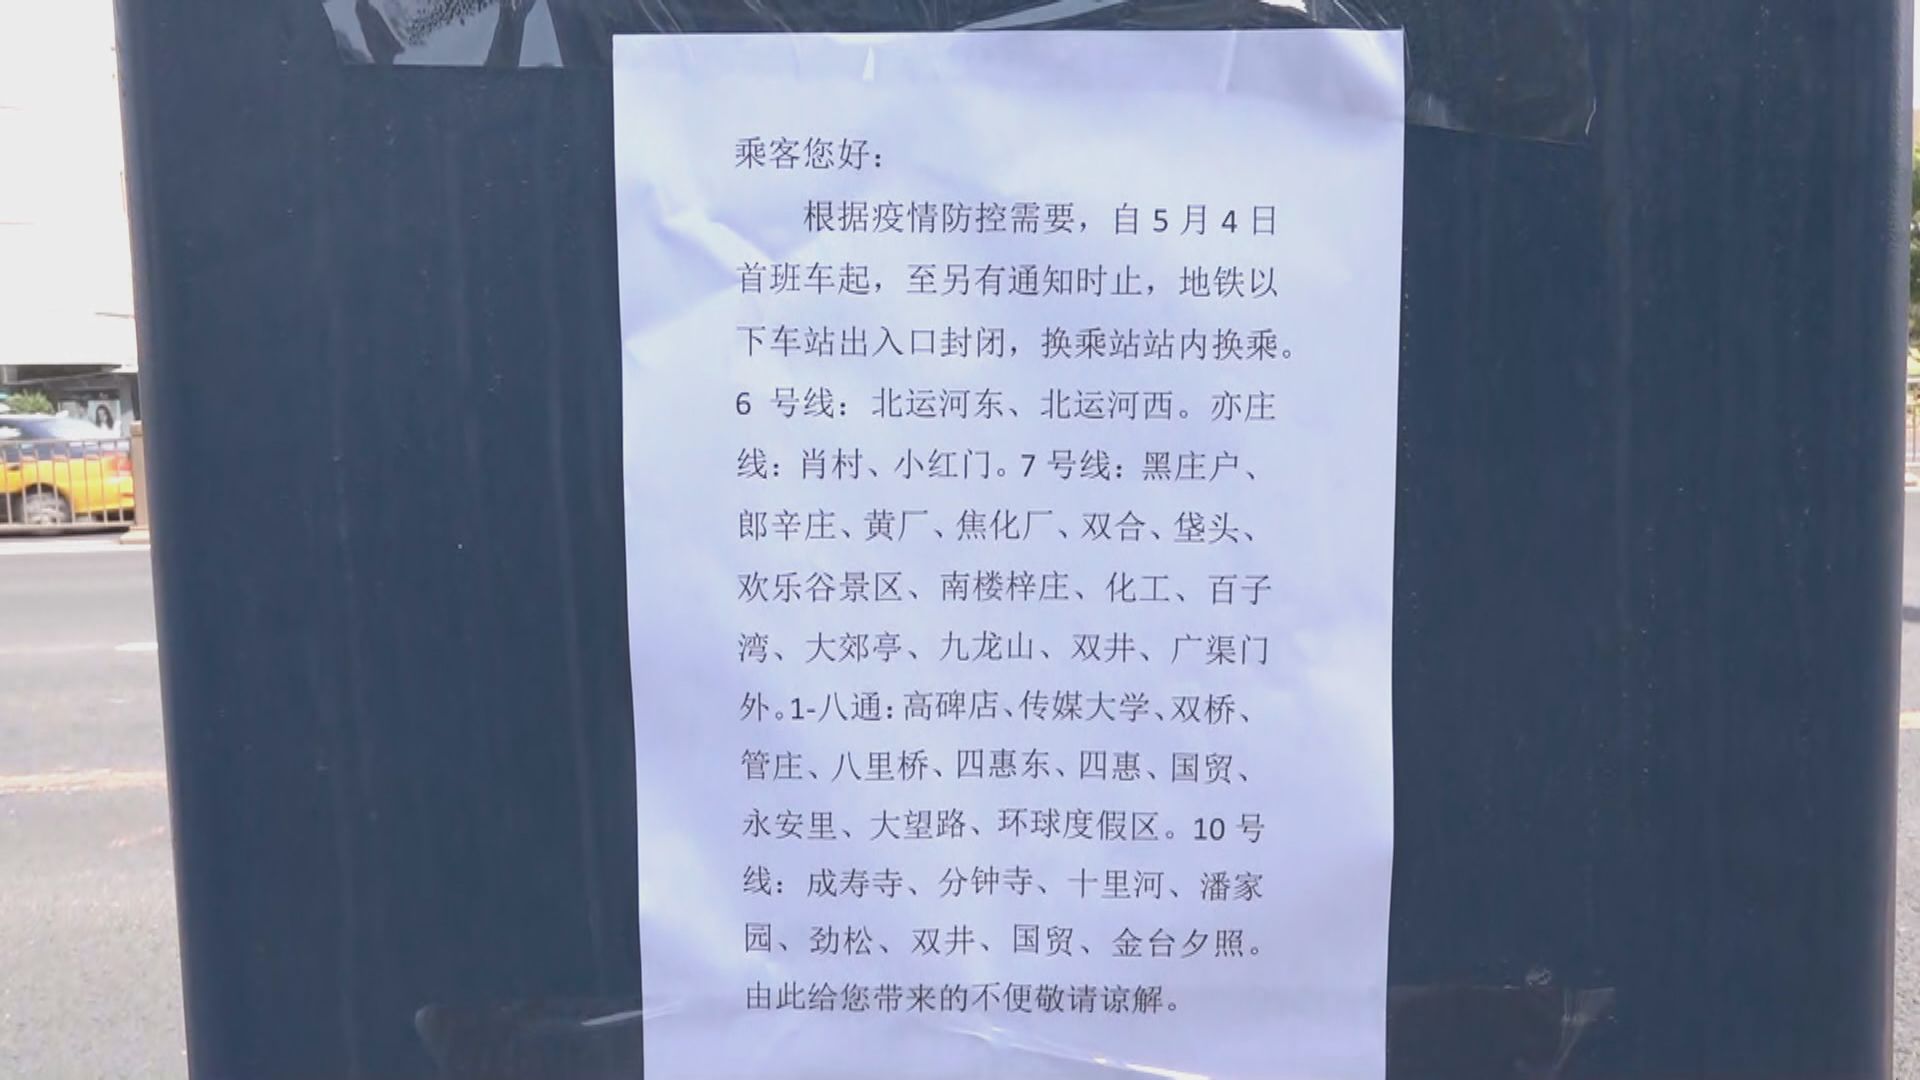 因應疫情北京地鐵部分車站今起封閉